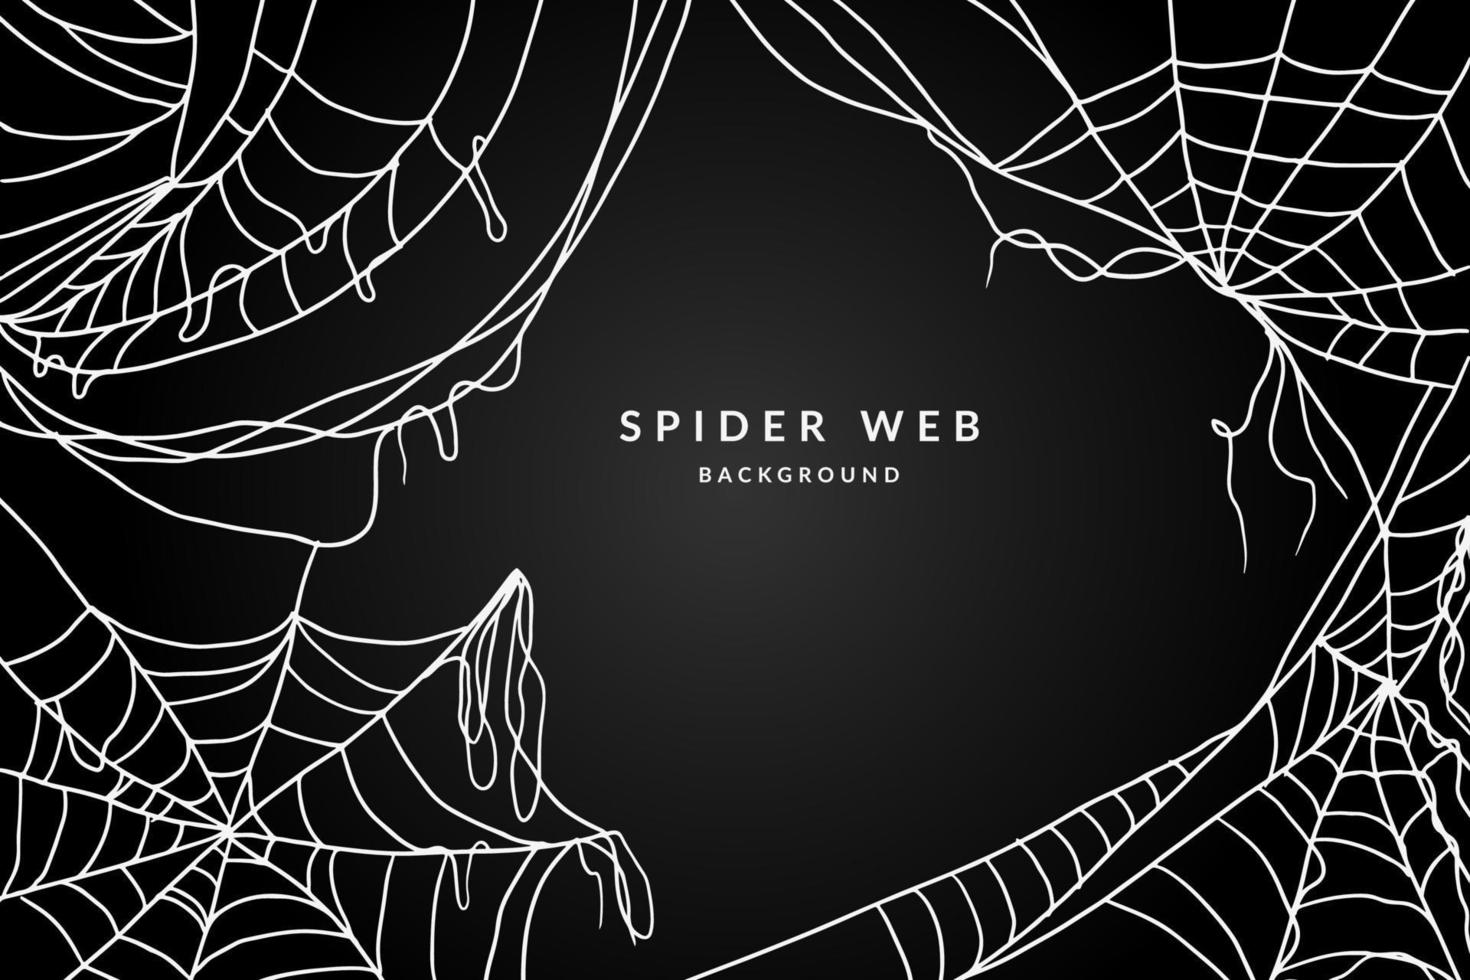 spider web background vector illustration